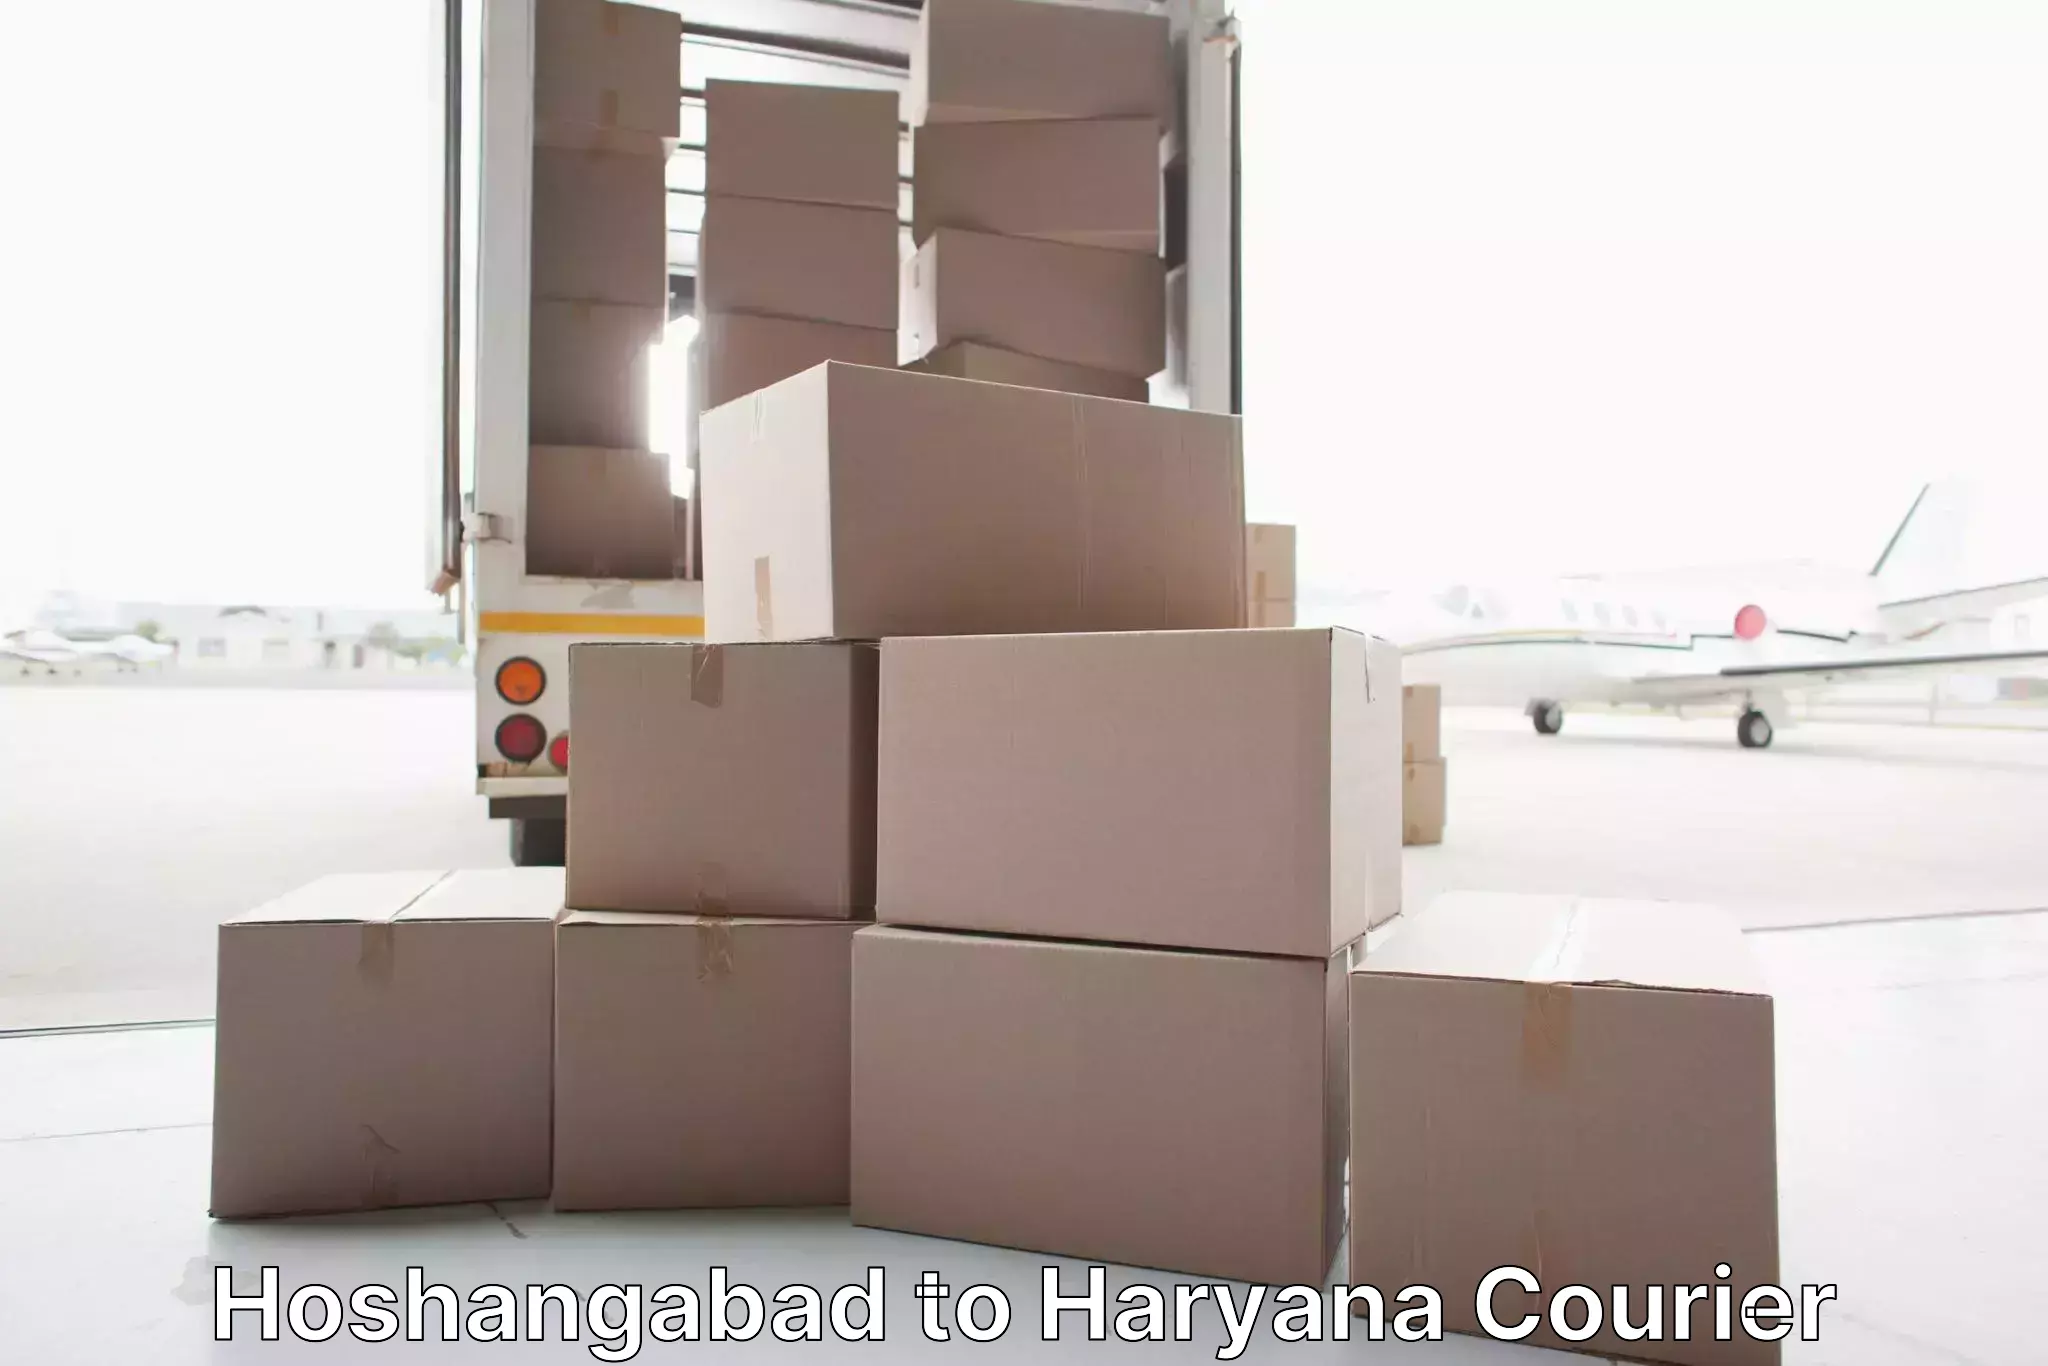 Home relocation experts Hoshangabad to Charkhari